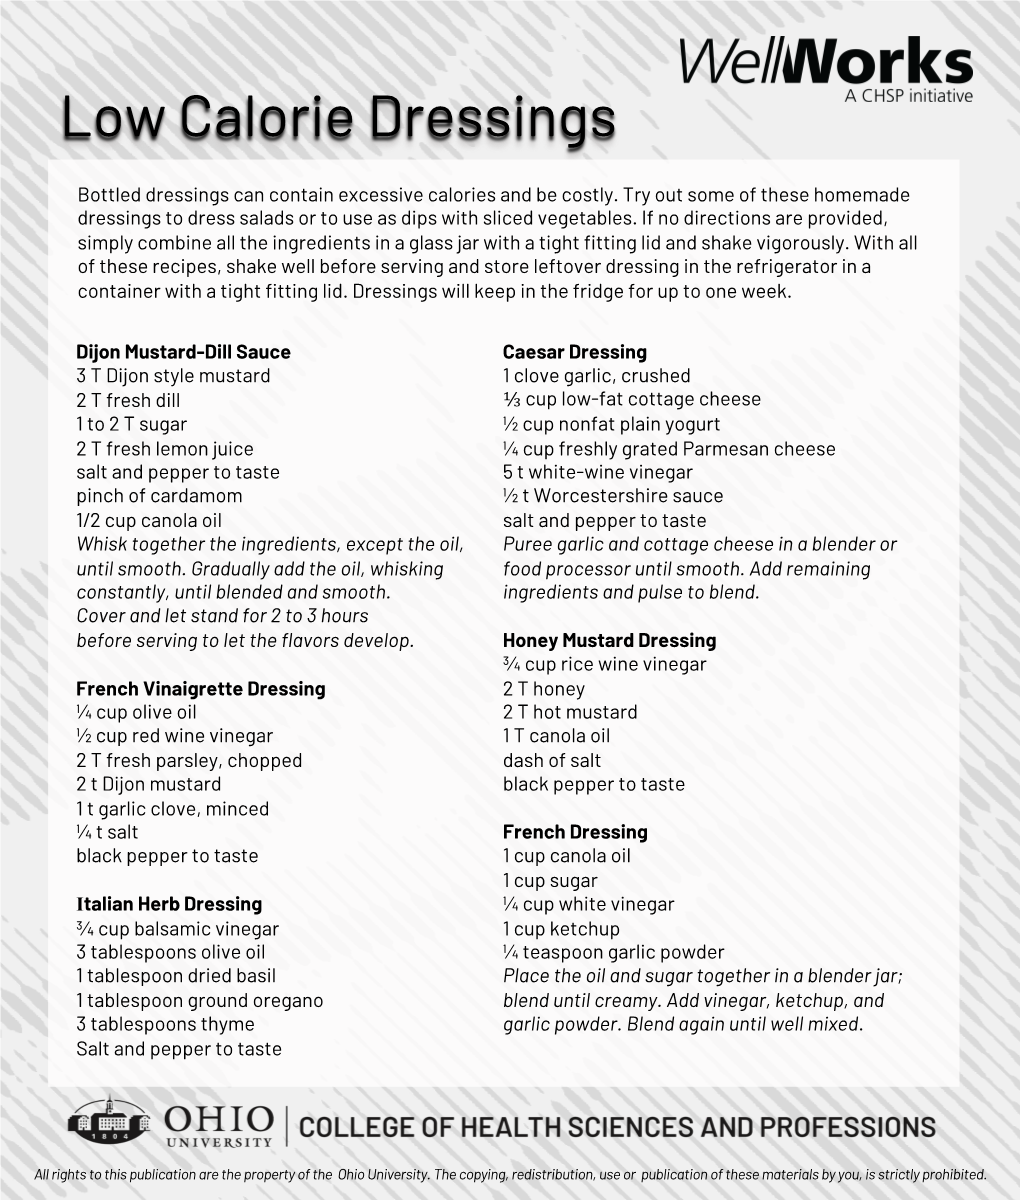 Low Calorie Dressings